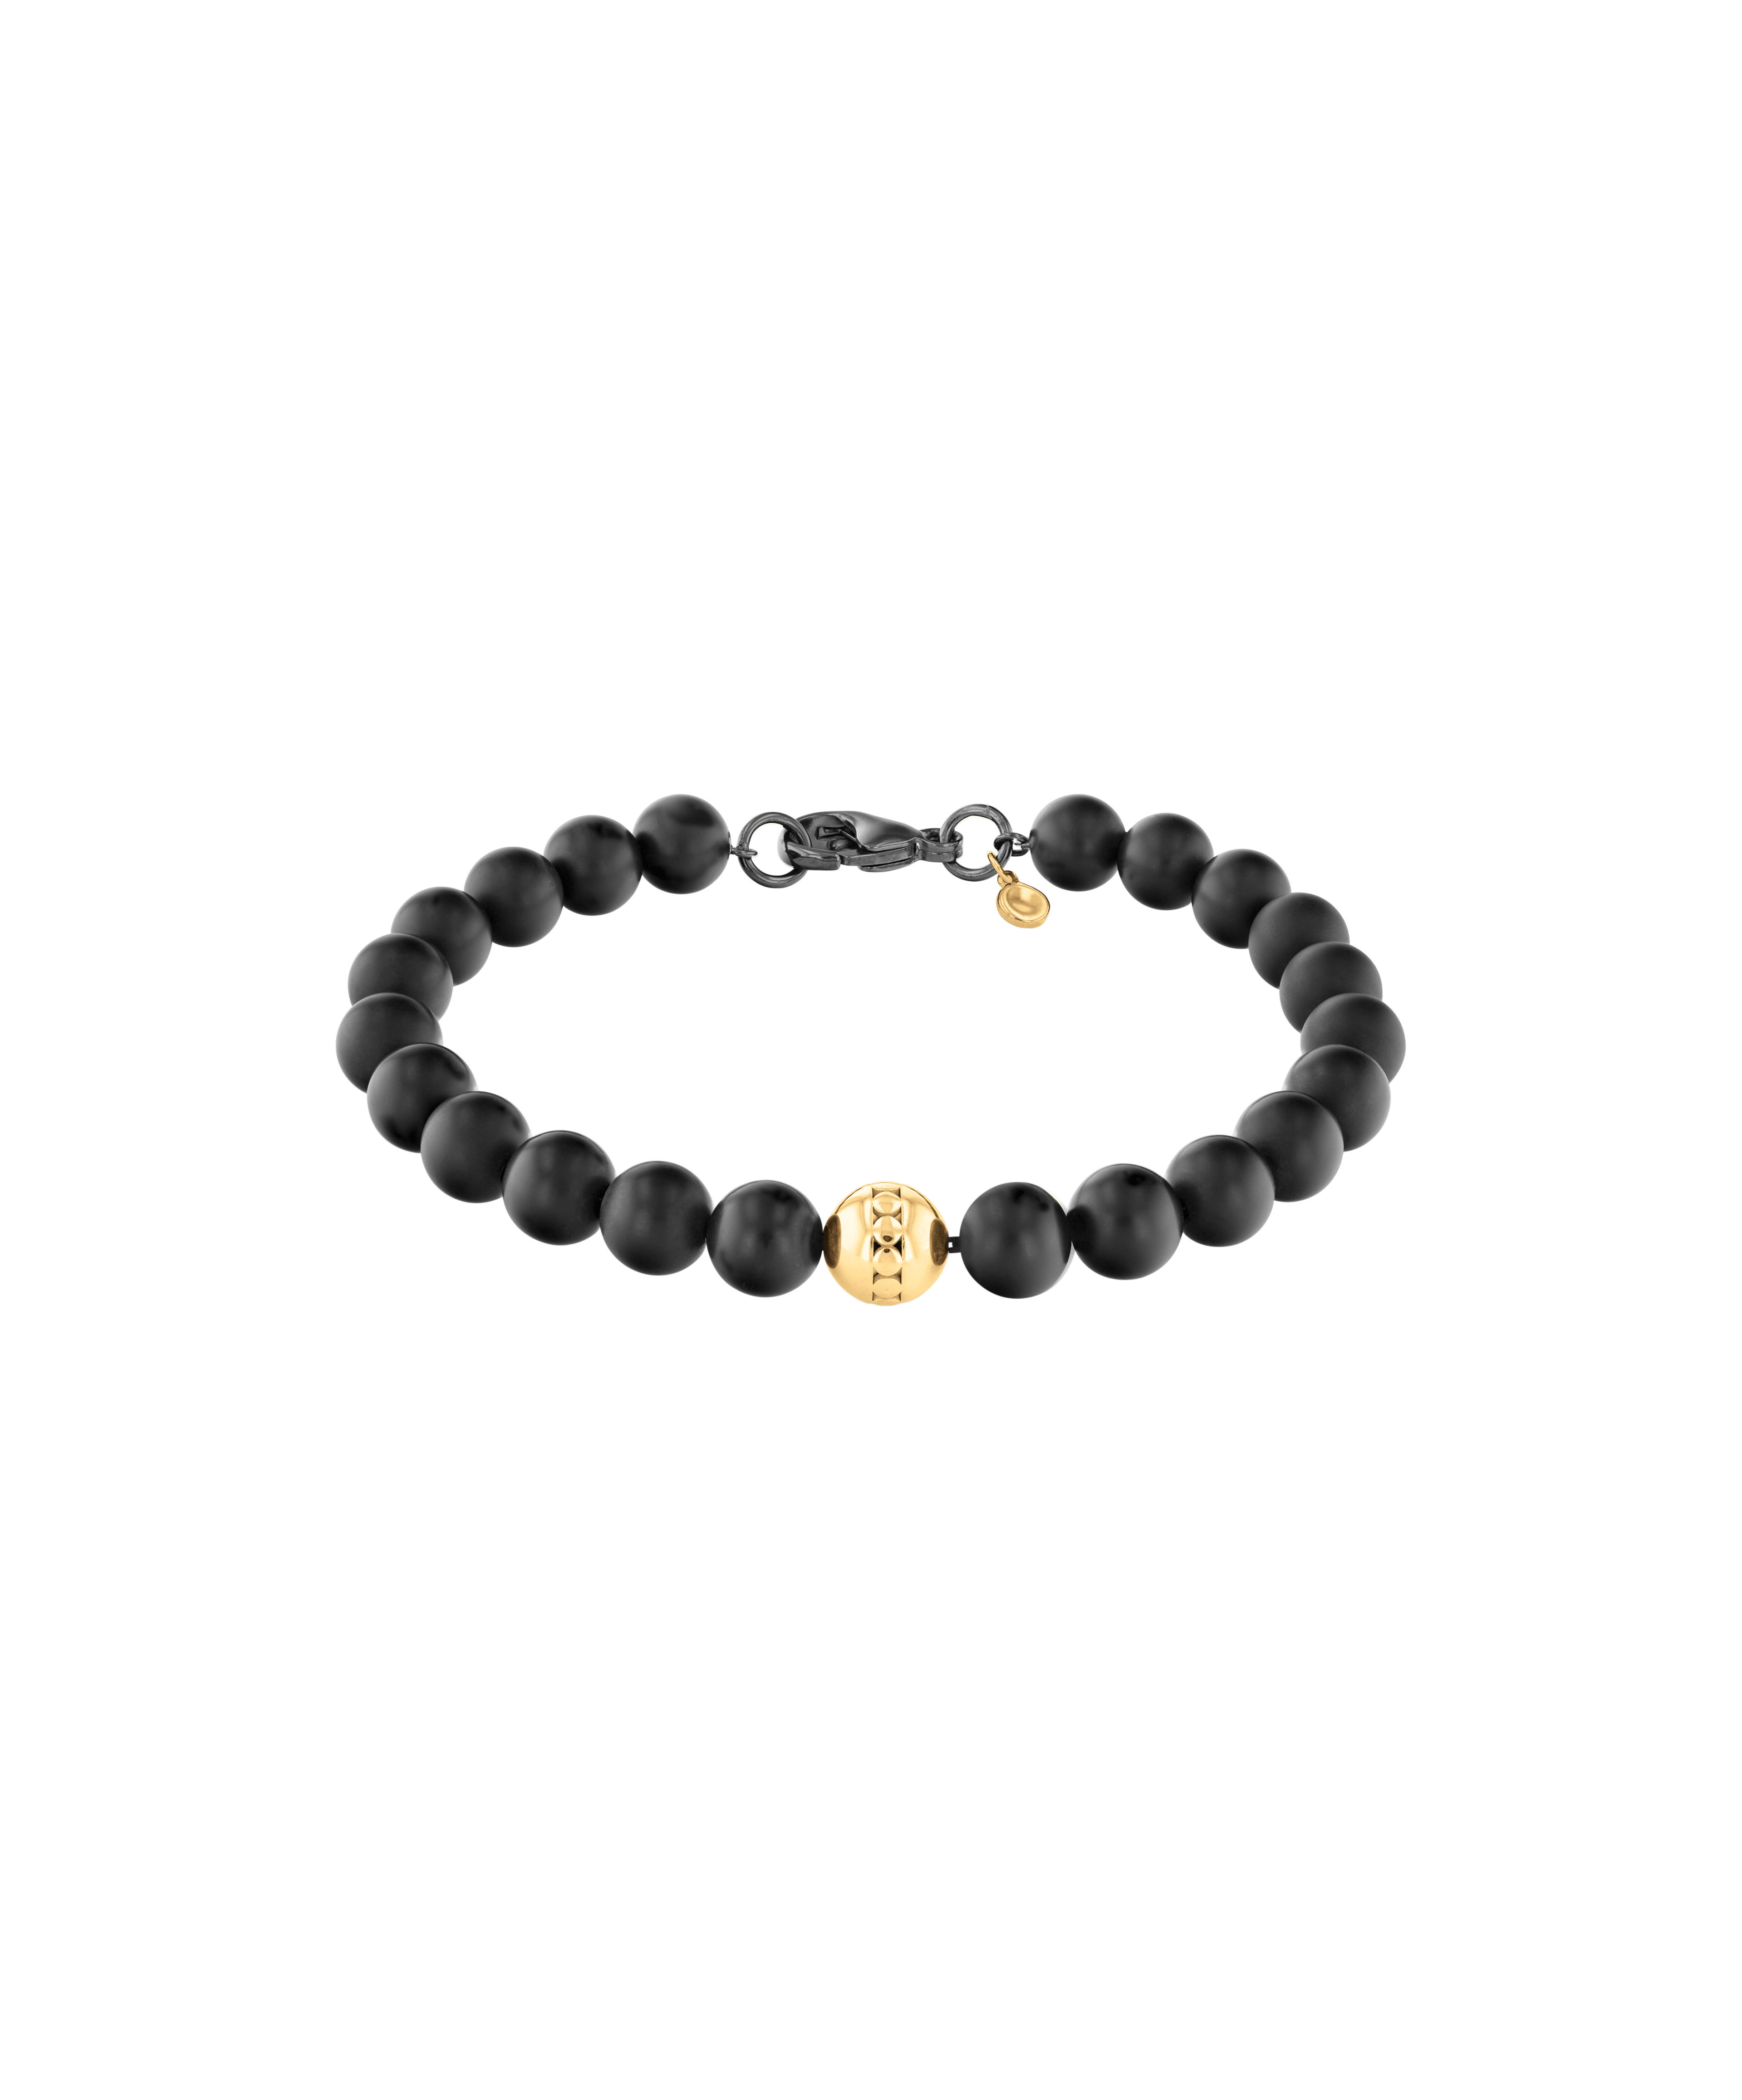 Black Onyx Name Bracelet for Men - Best Gifts for Men